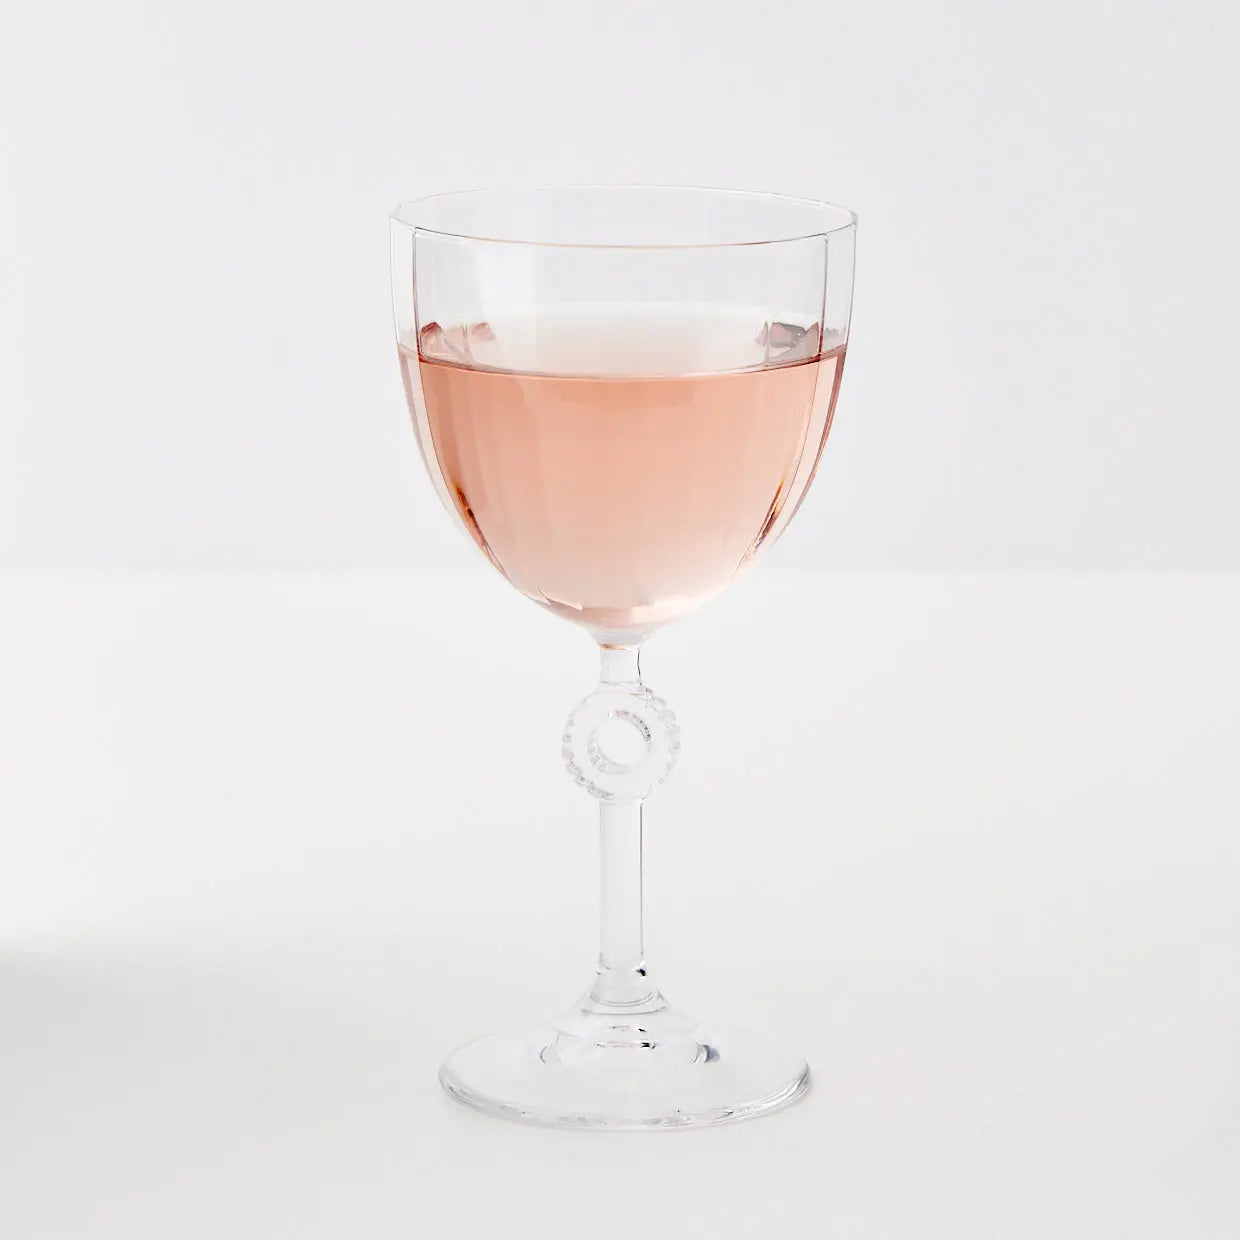 Classic Wine Glass - GigiandTom